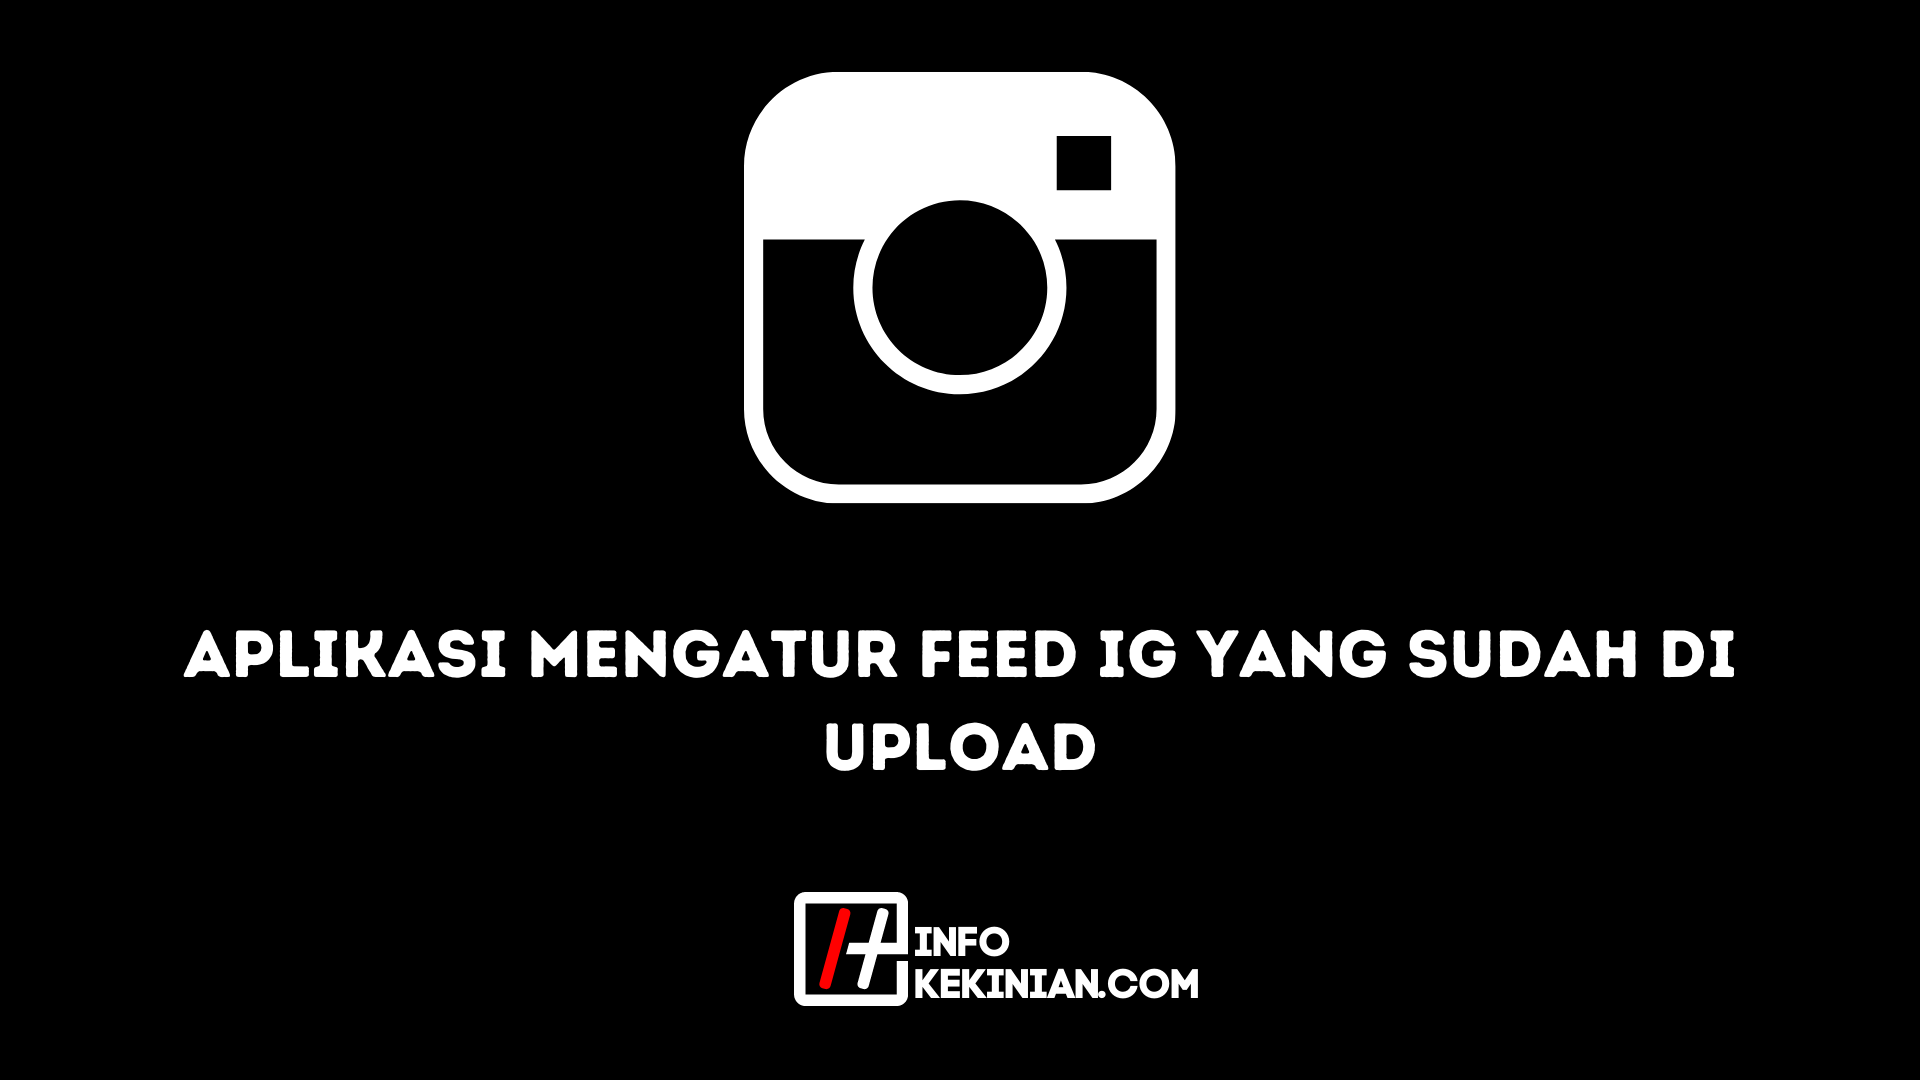 Aplikasi Mengatur Feed Ig yang Sudah di Upload